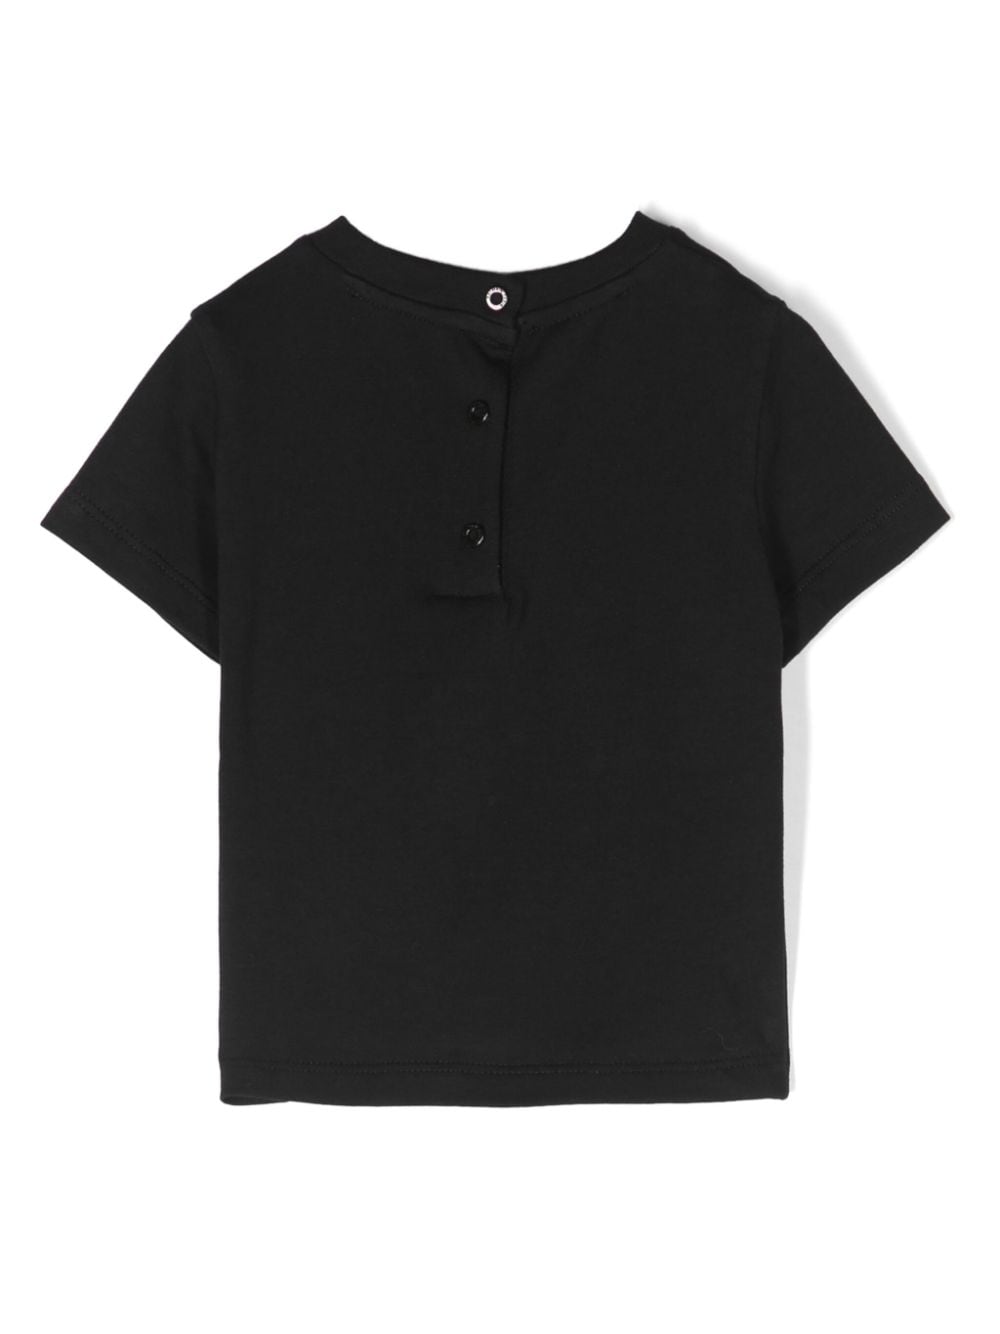 T-shirt neonata nera